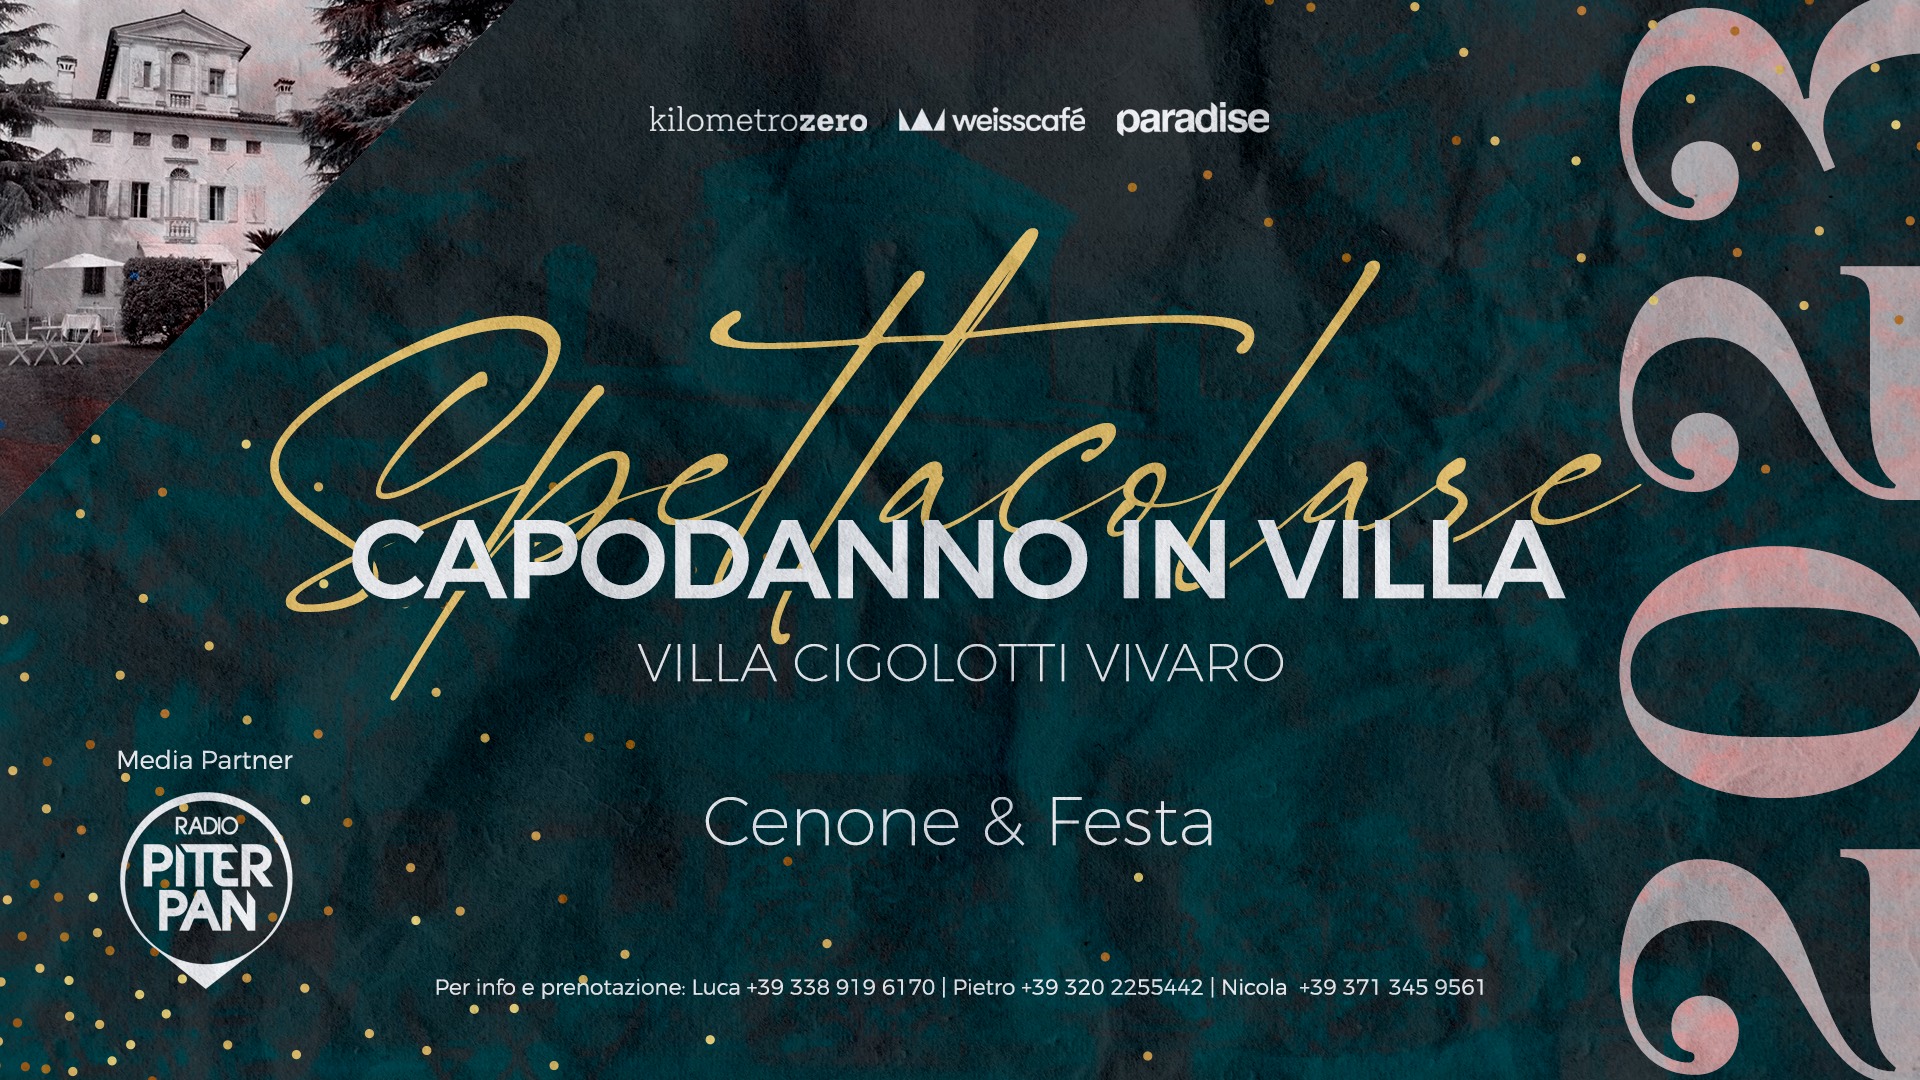 Spettacolare ✦ CAPODANNO IN VILLA ✦ Villa Cigolotti